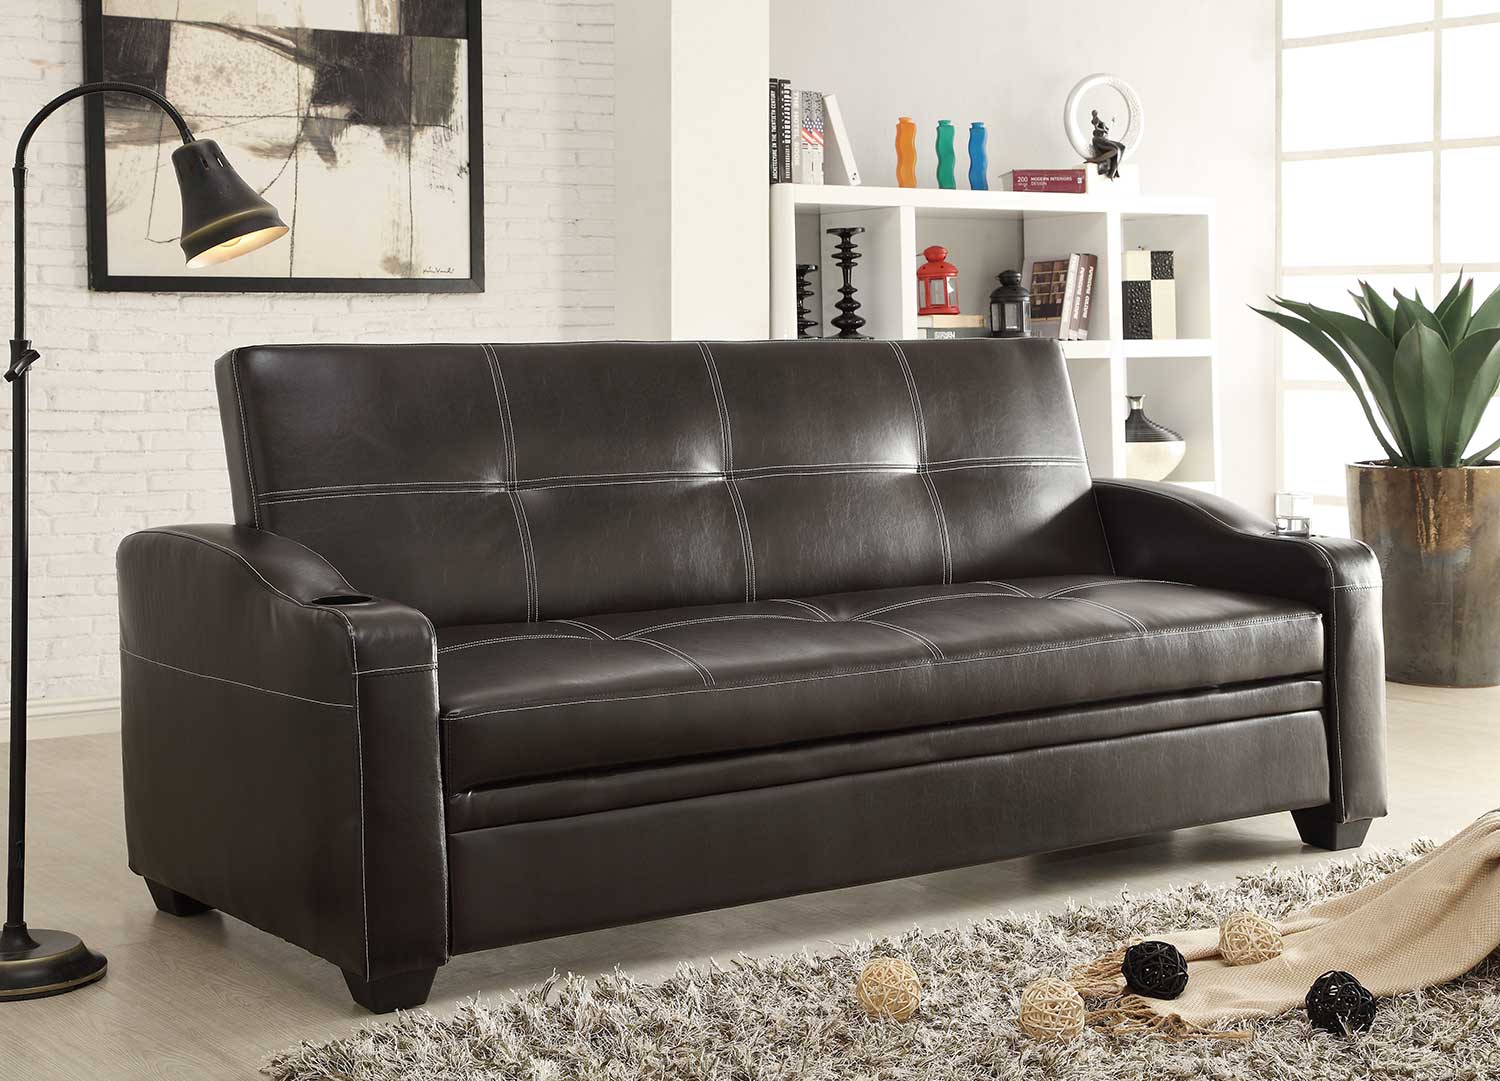 Homelegance Caffrey Elegant Lounger Sofa Bed - Dark Brown